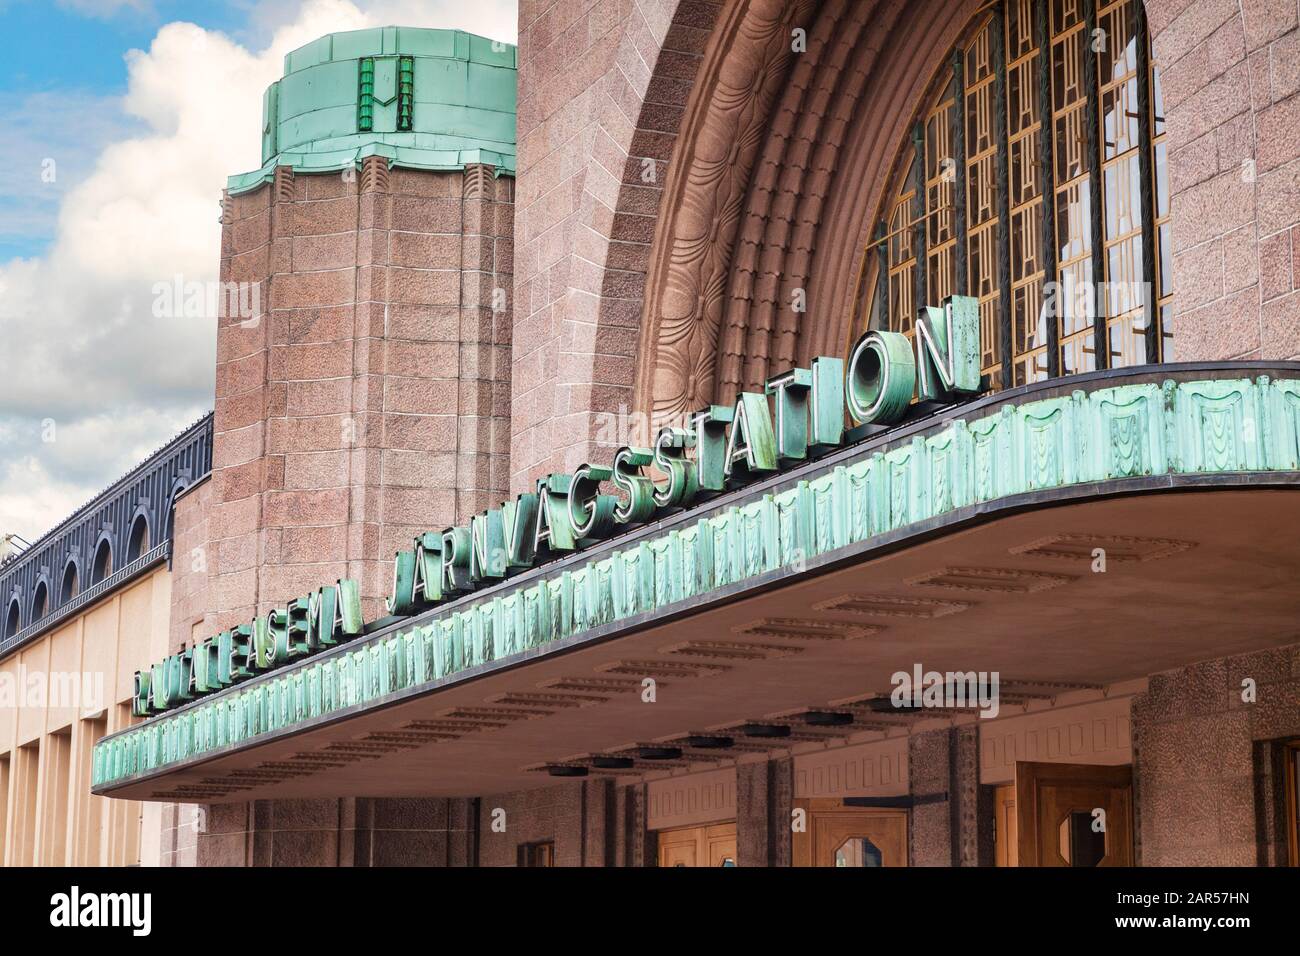 20 septembre 2018 : Helsinki, Finlande, la gare art déco, détail du nom au-dessus de l'entrée. Banque D'Images